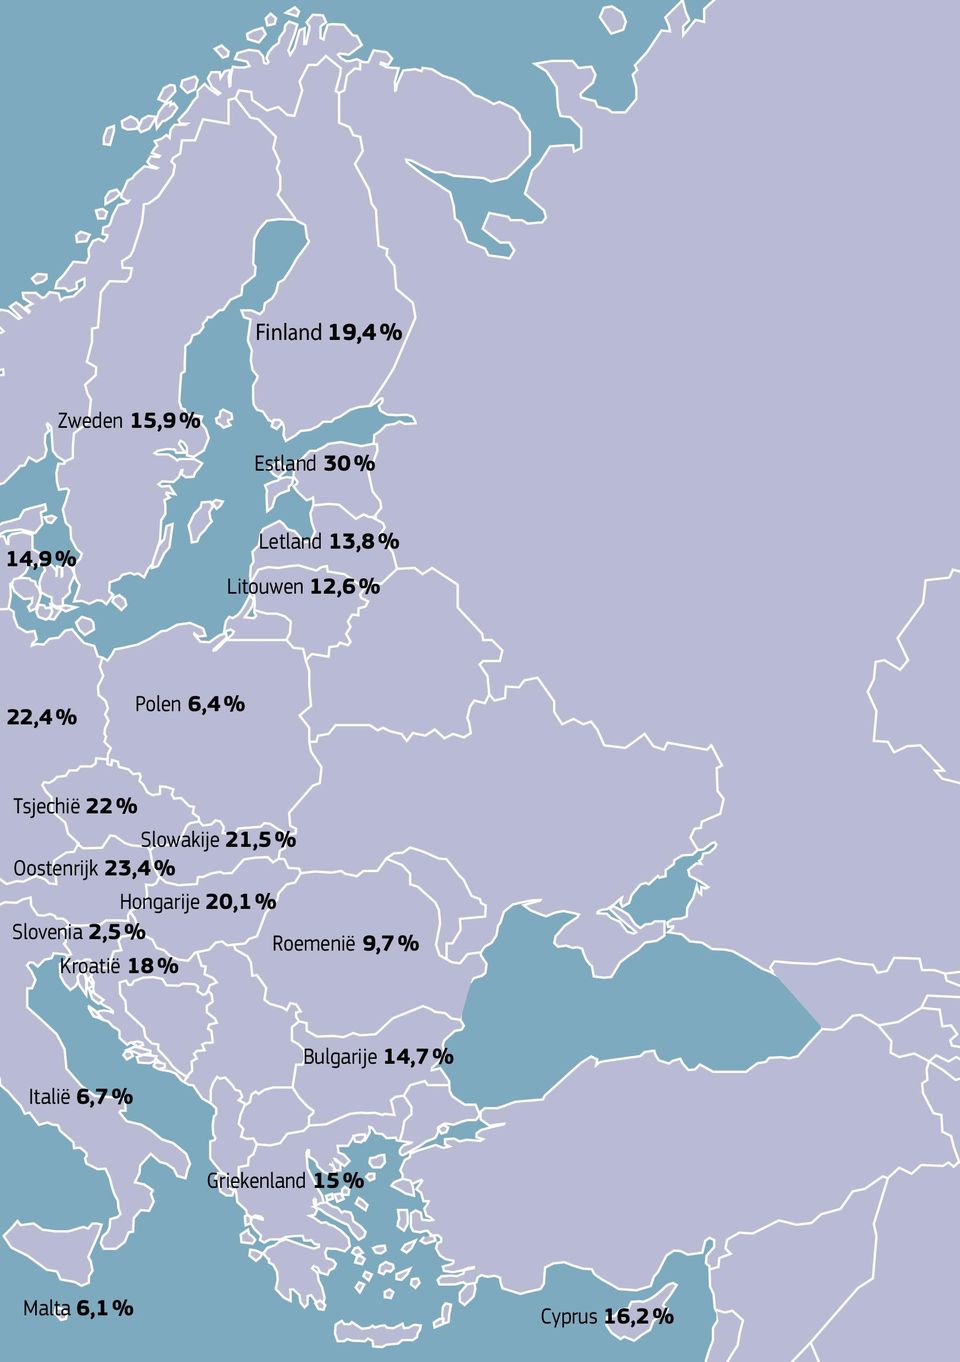 Oostenrijk 23,4 % Hongarije 20,1 % Slovenia 2,5 % Roemenië 9,7 %